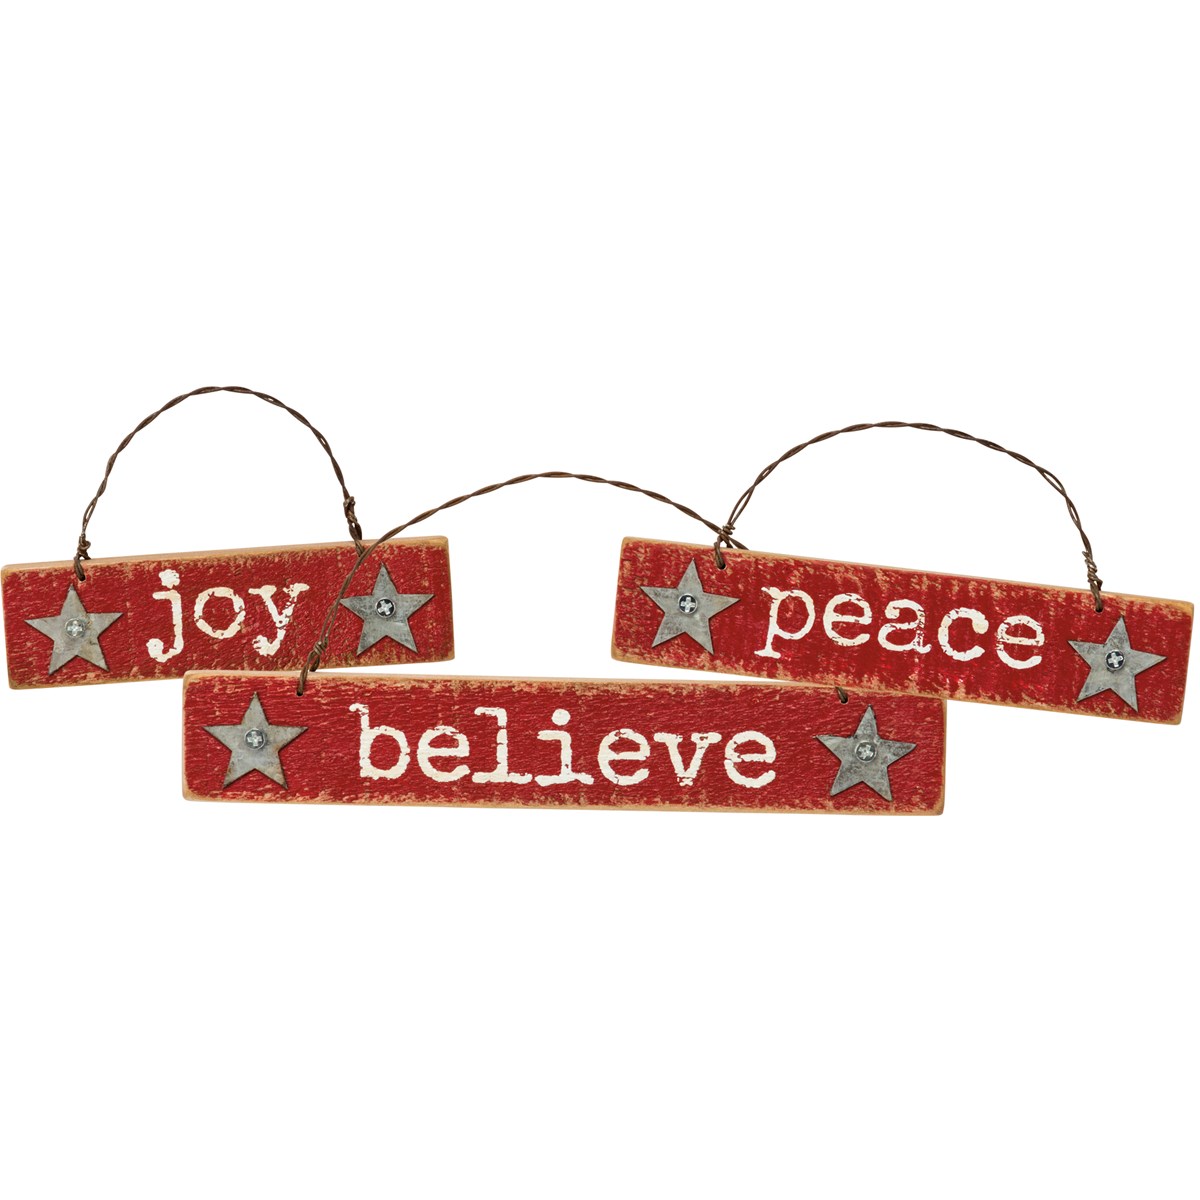 Joy Peace Believe Slat Ornament Set - Wood, Metal, Wire